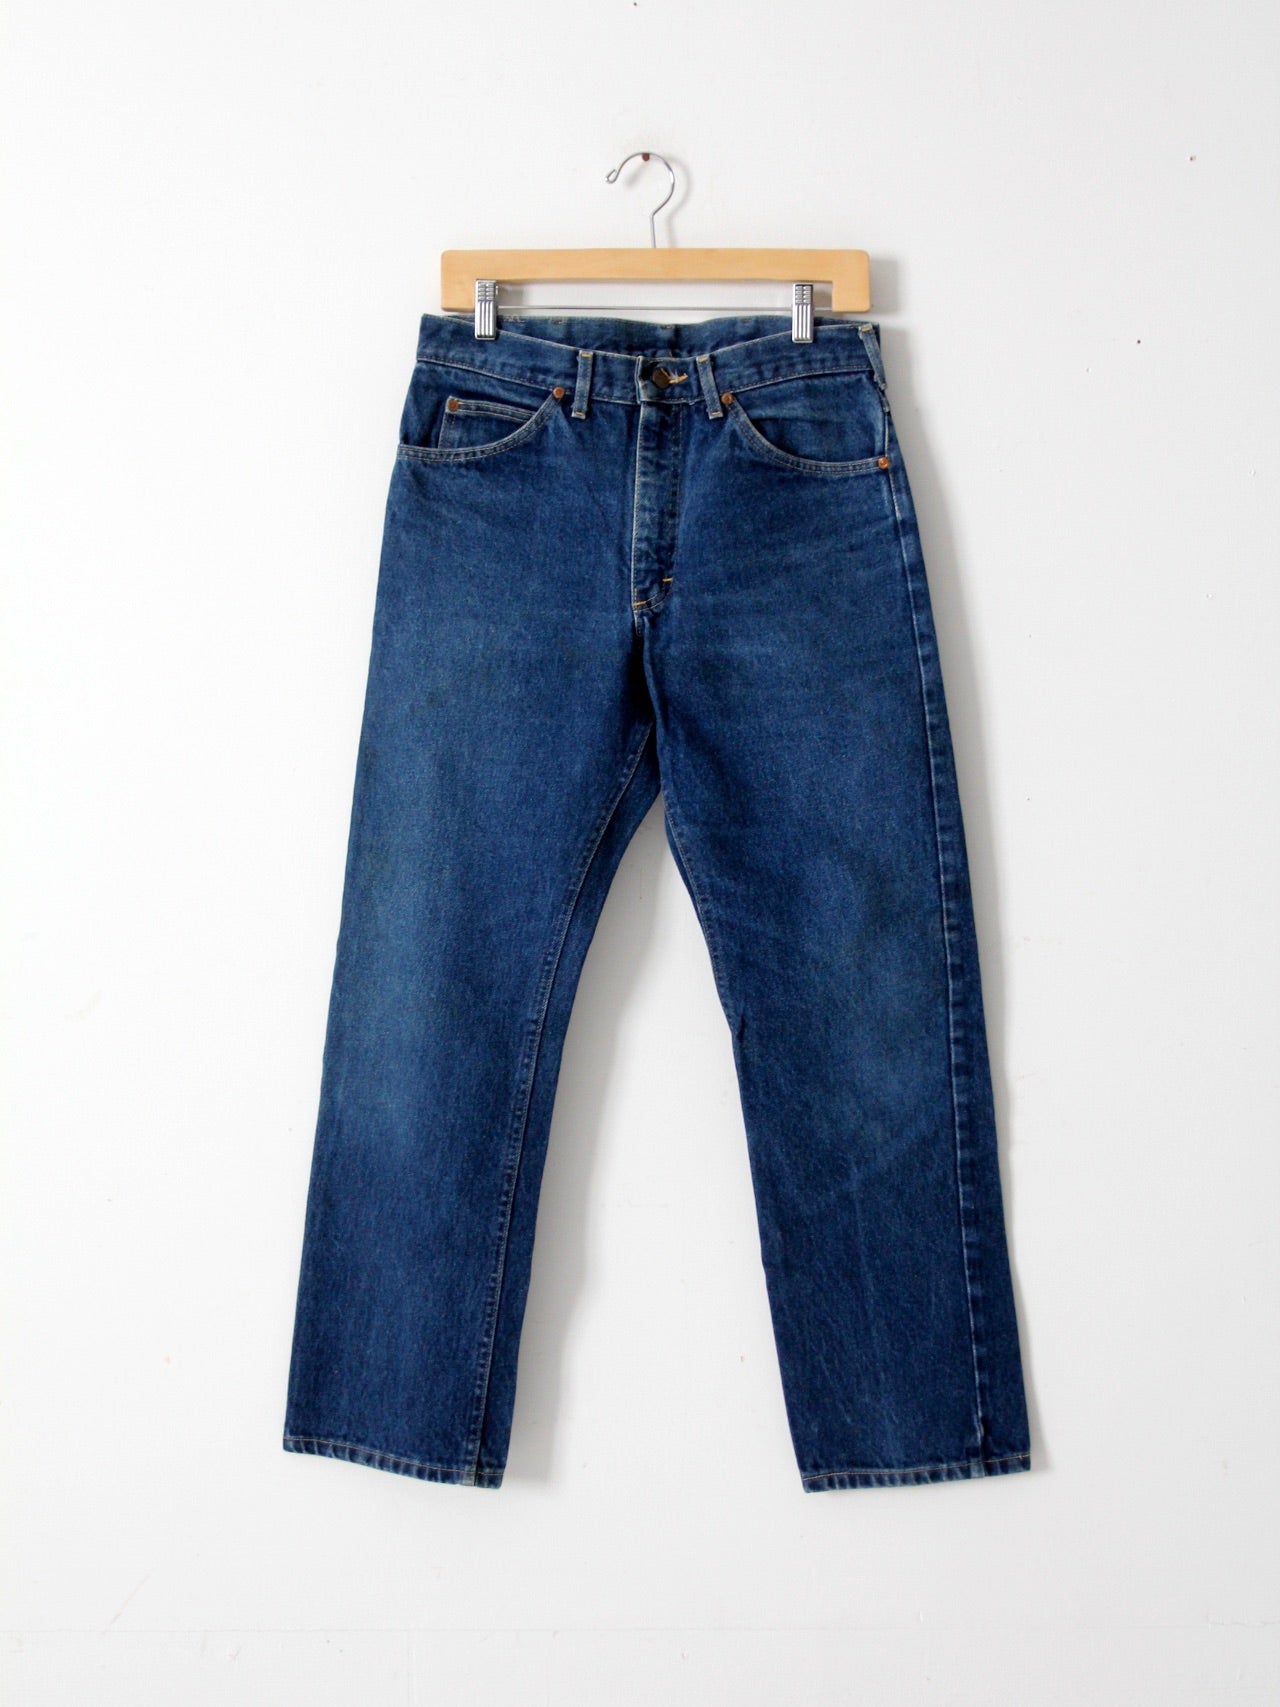 vintage Lee Riders denim jeans, 32 x 30 – 86 Vintage